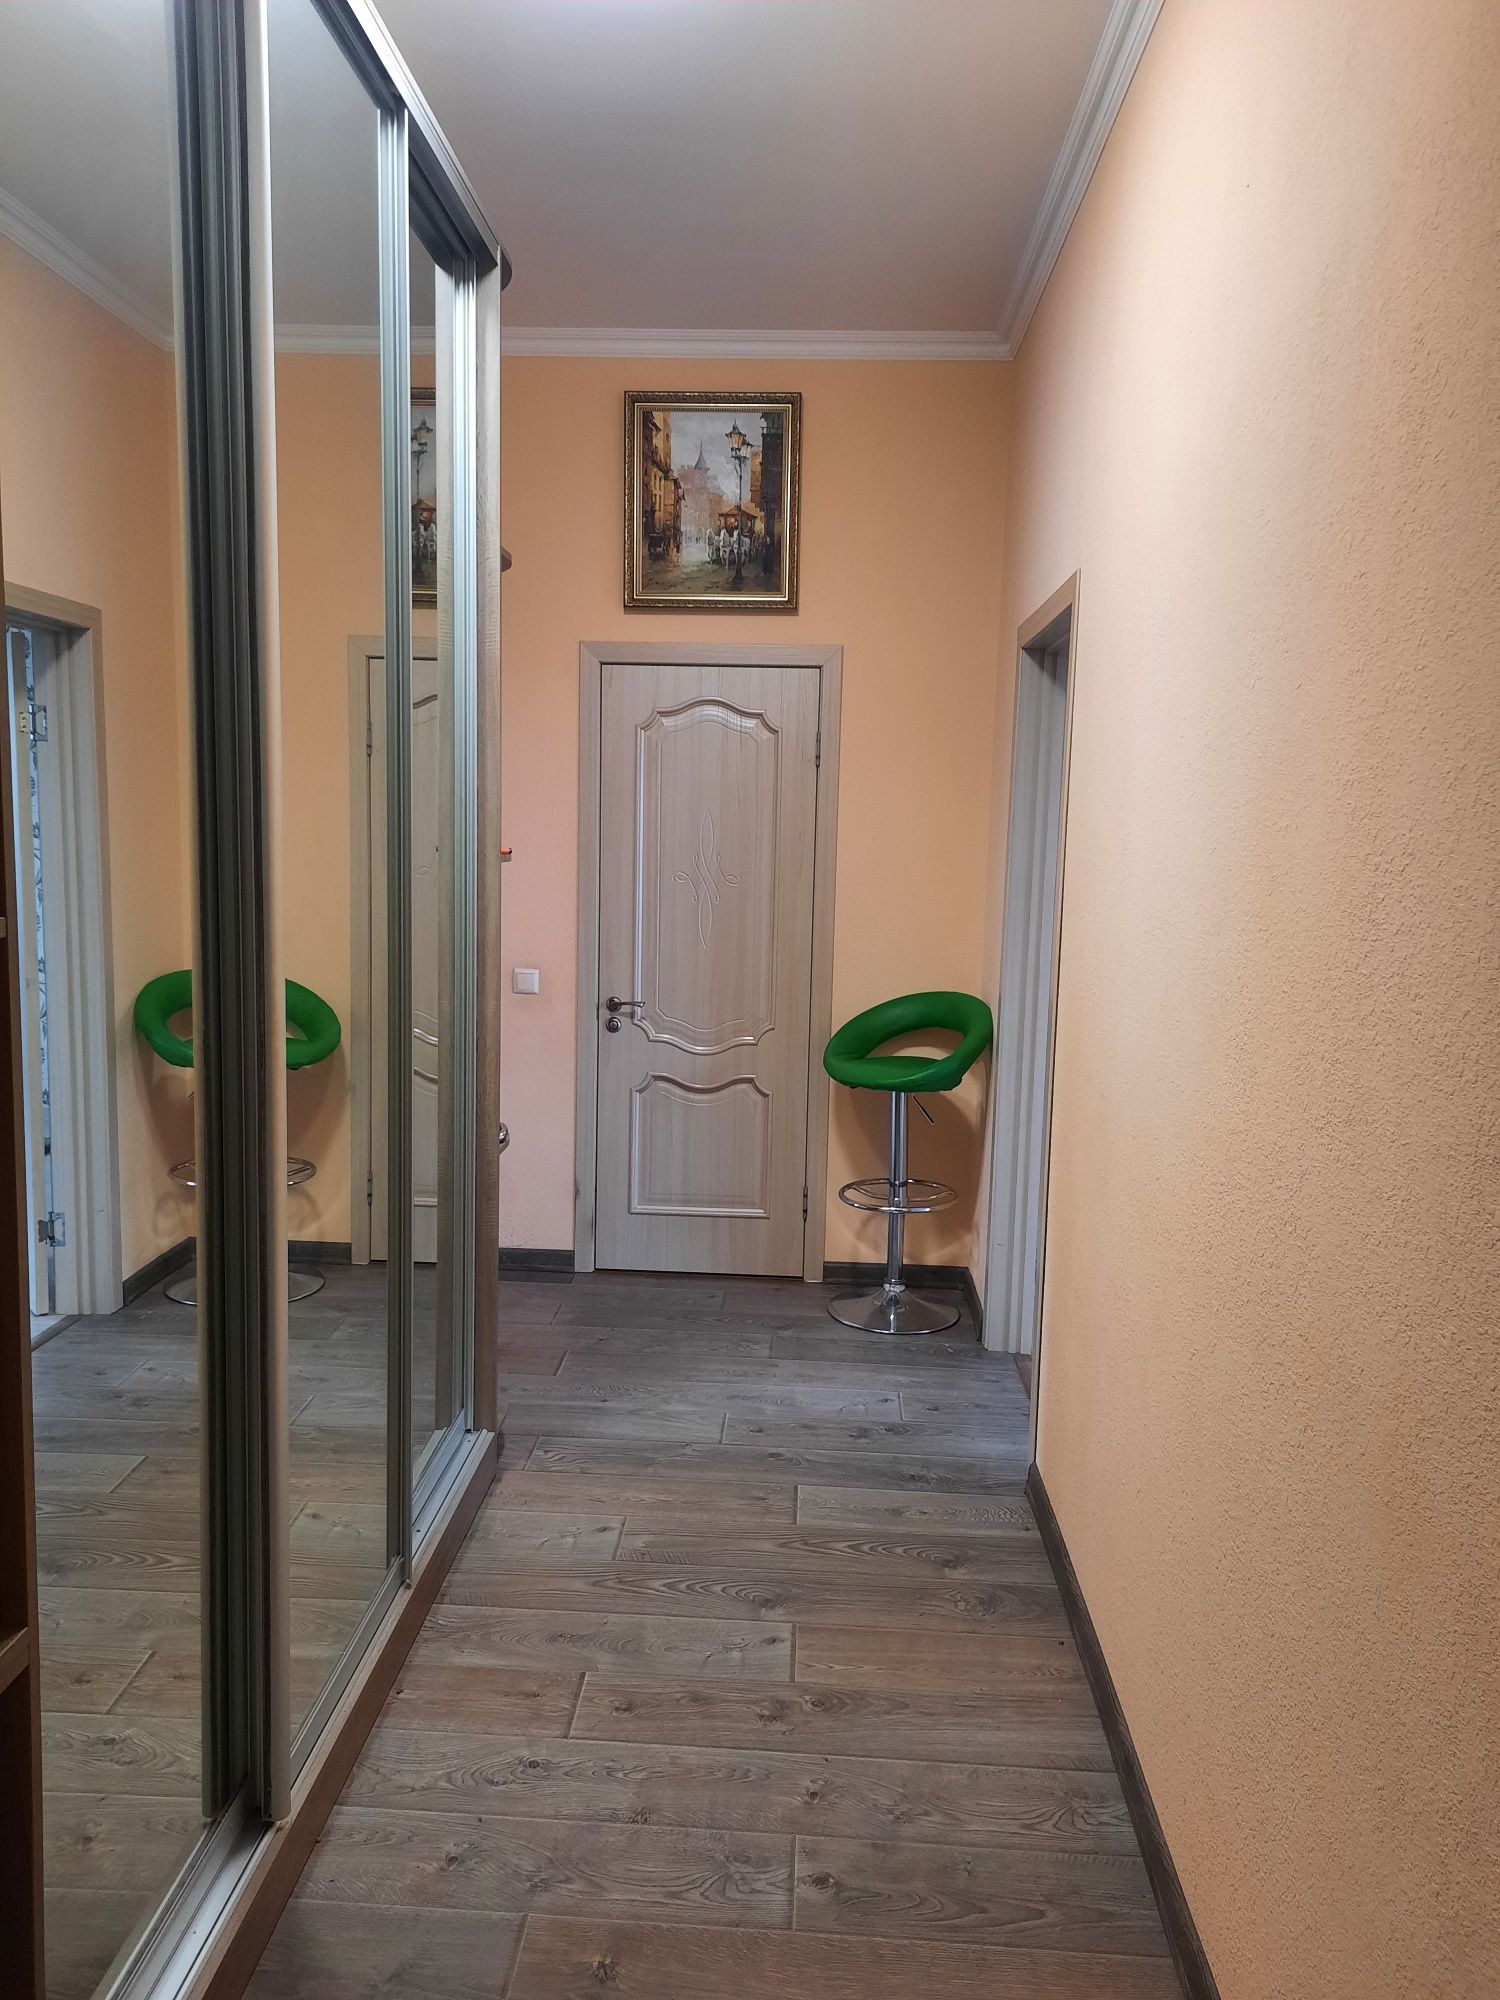 Продам 3 х комнатную квартиру в Украинке.